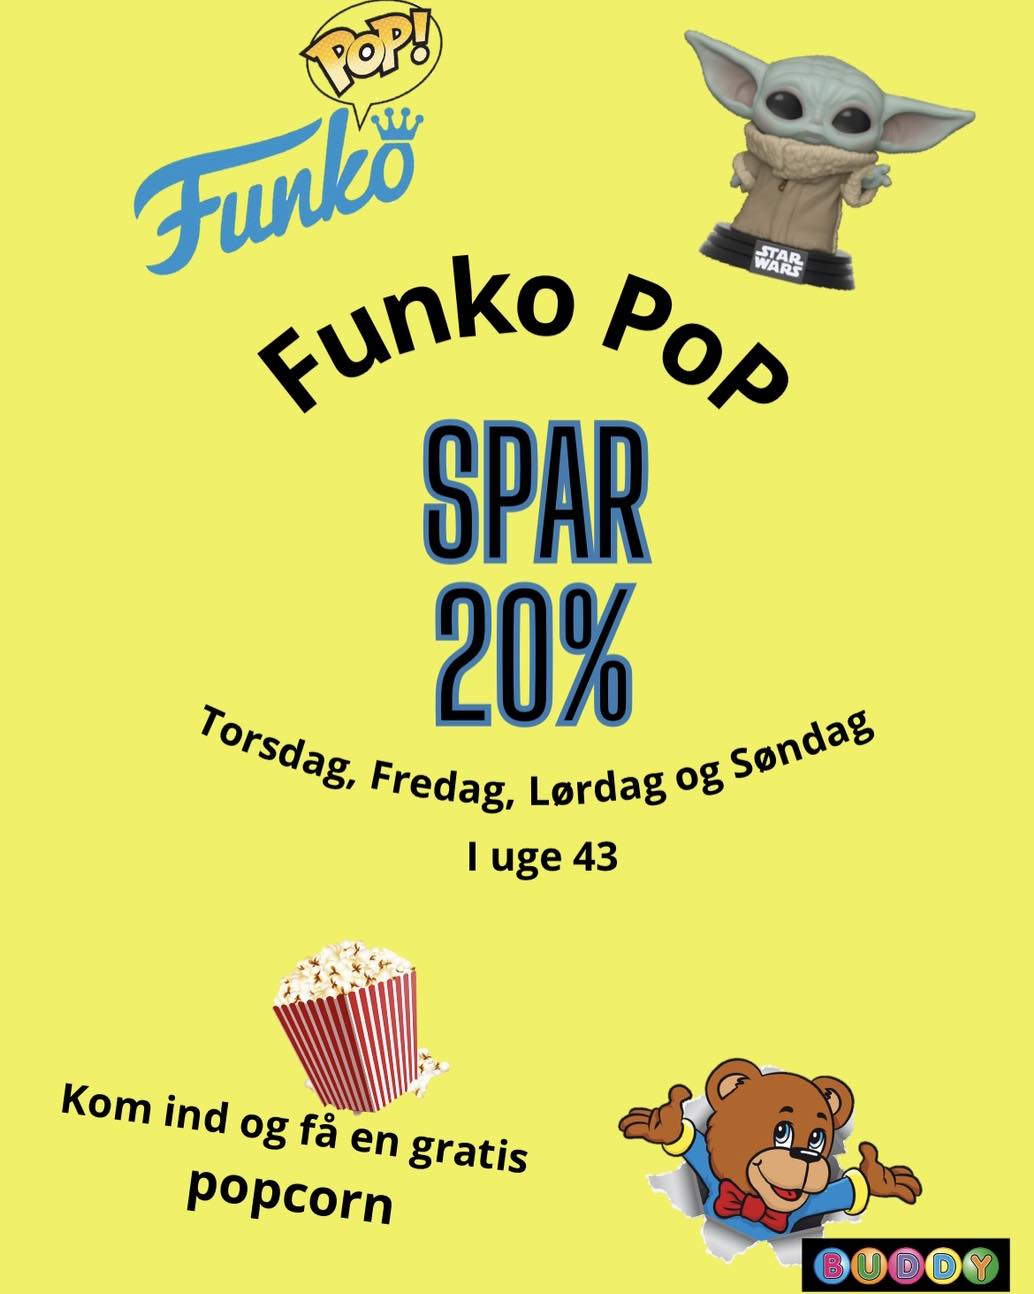 Fokus på Funko pop